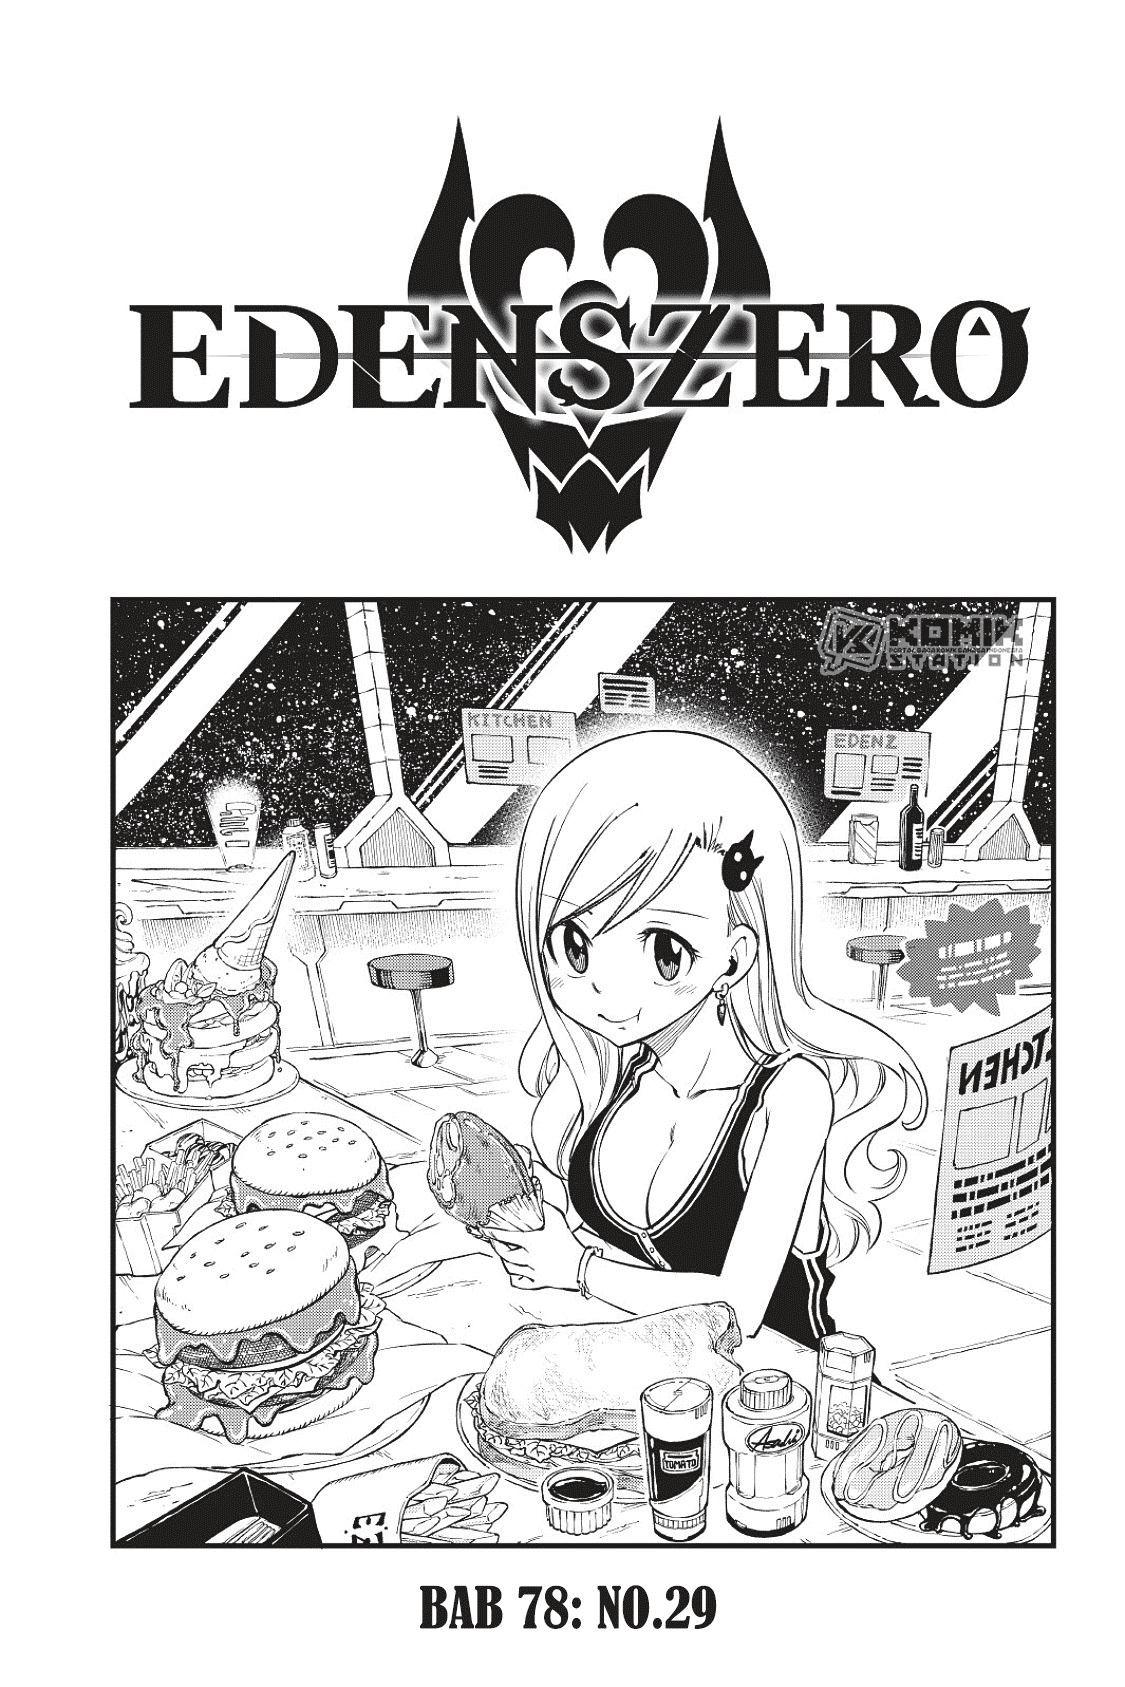 Eden’s Zero Chapter 78